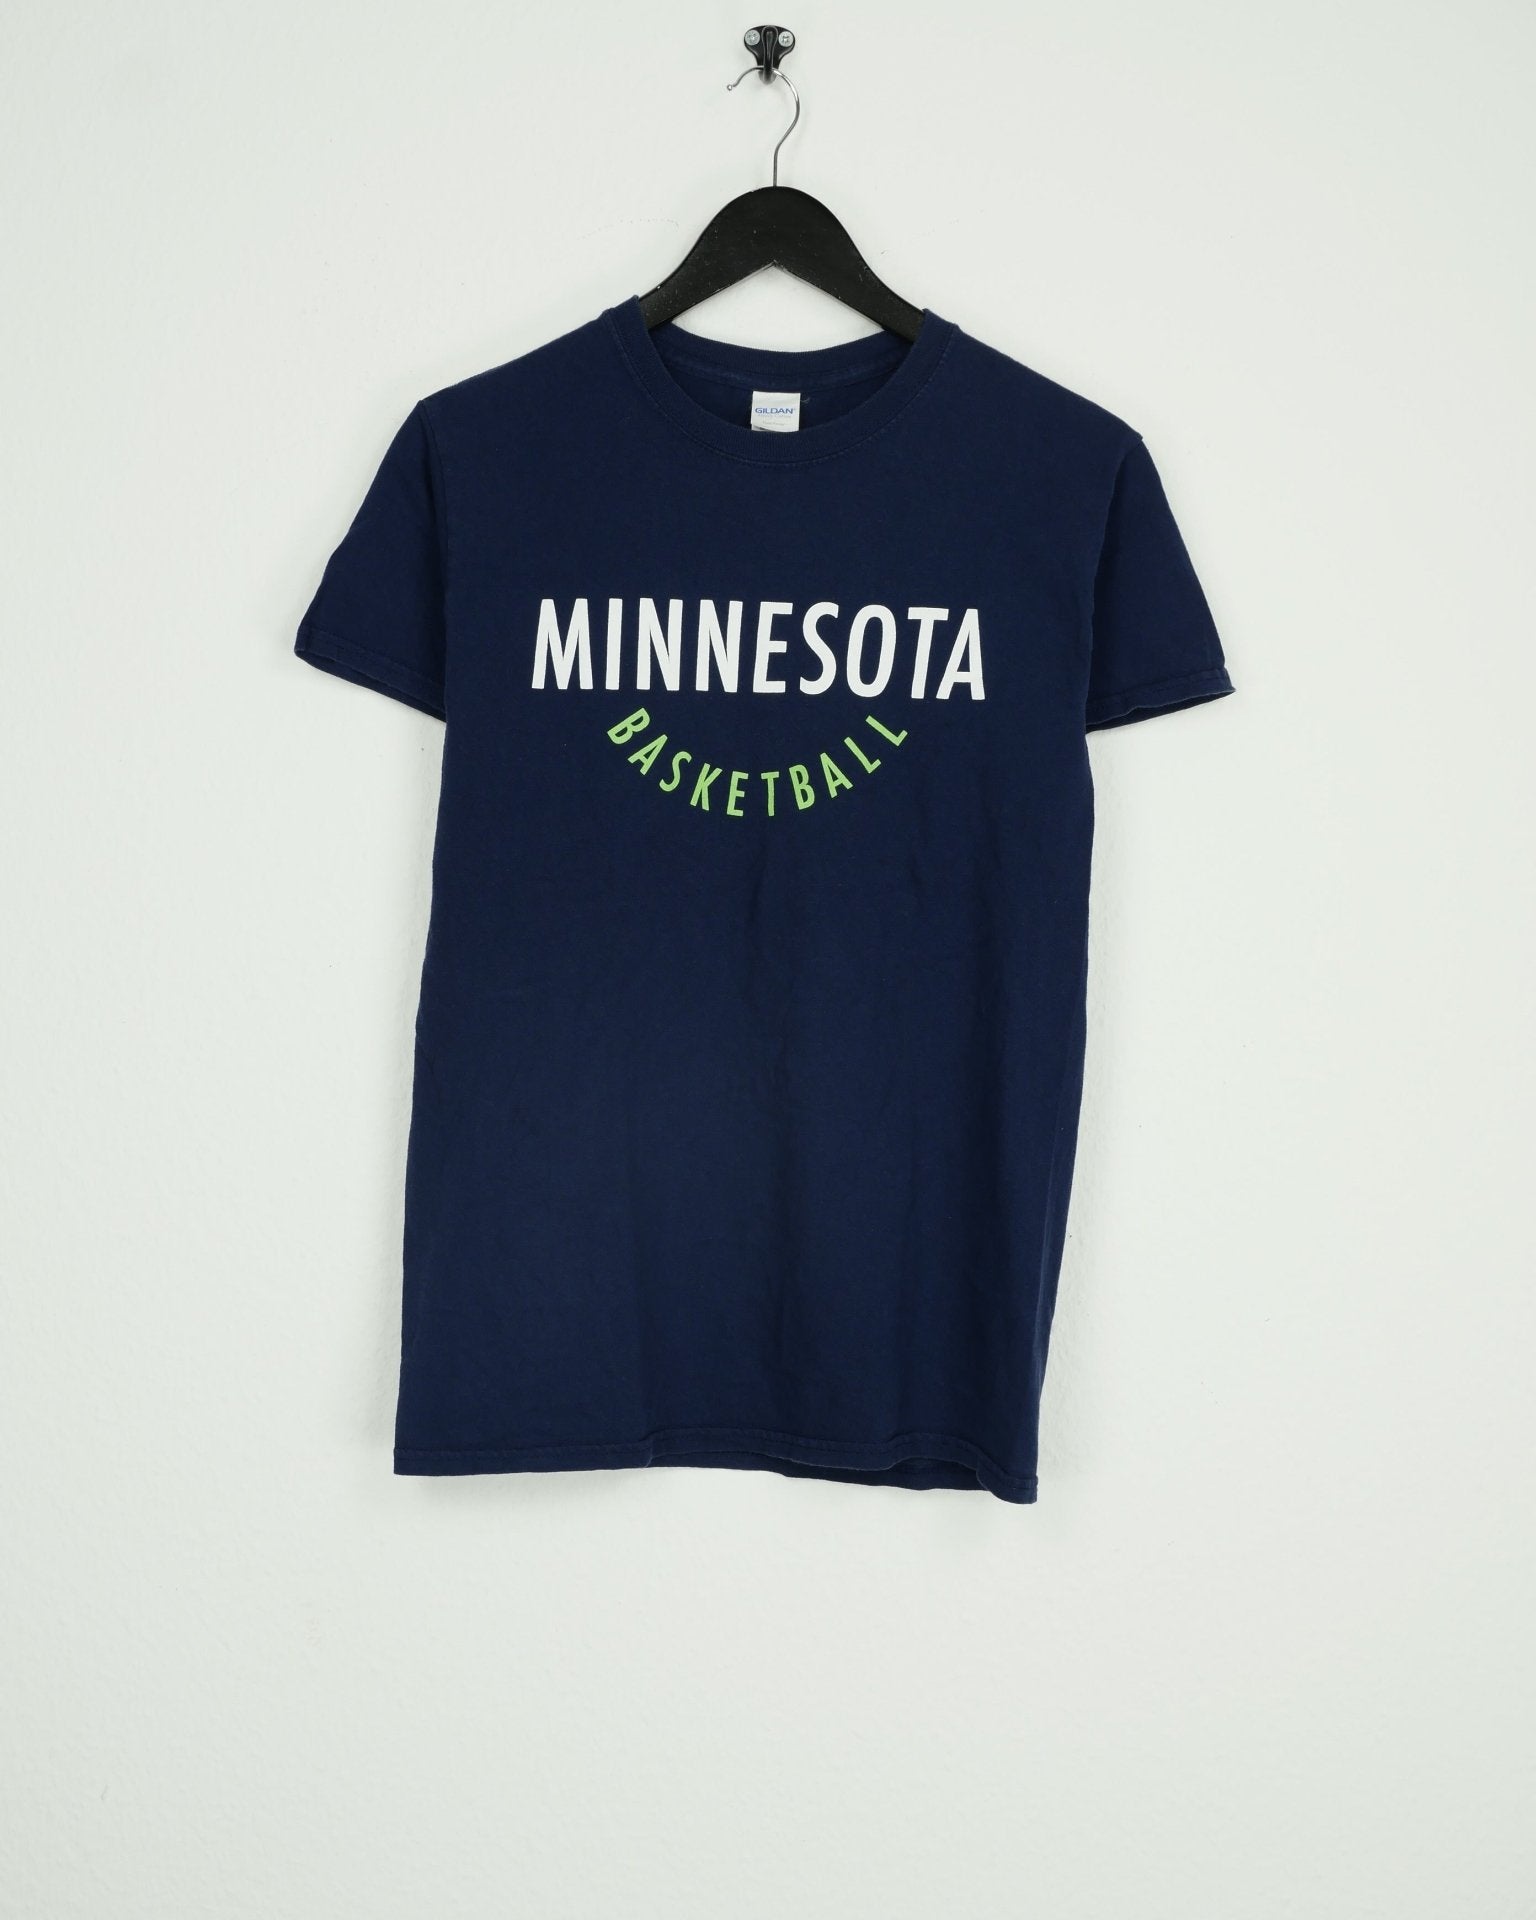 Minnesota Basketball printed logo navy shirt - Peeces